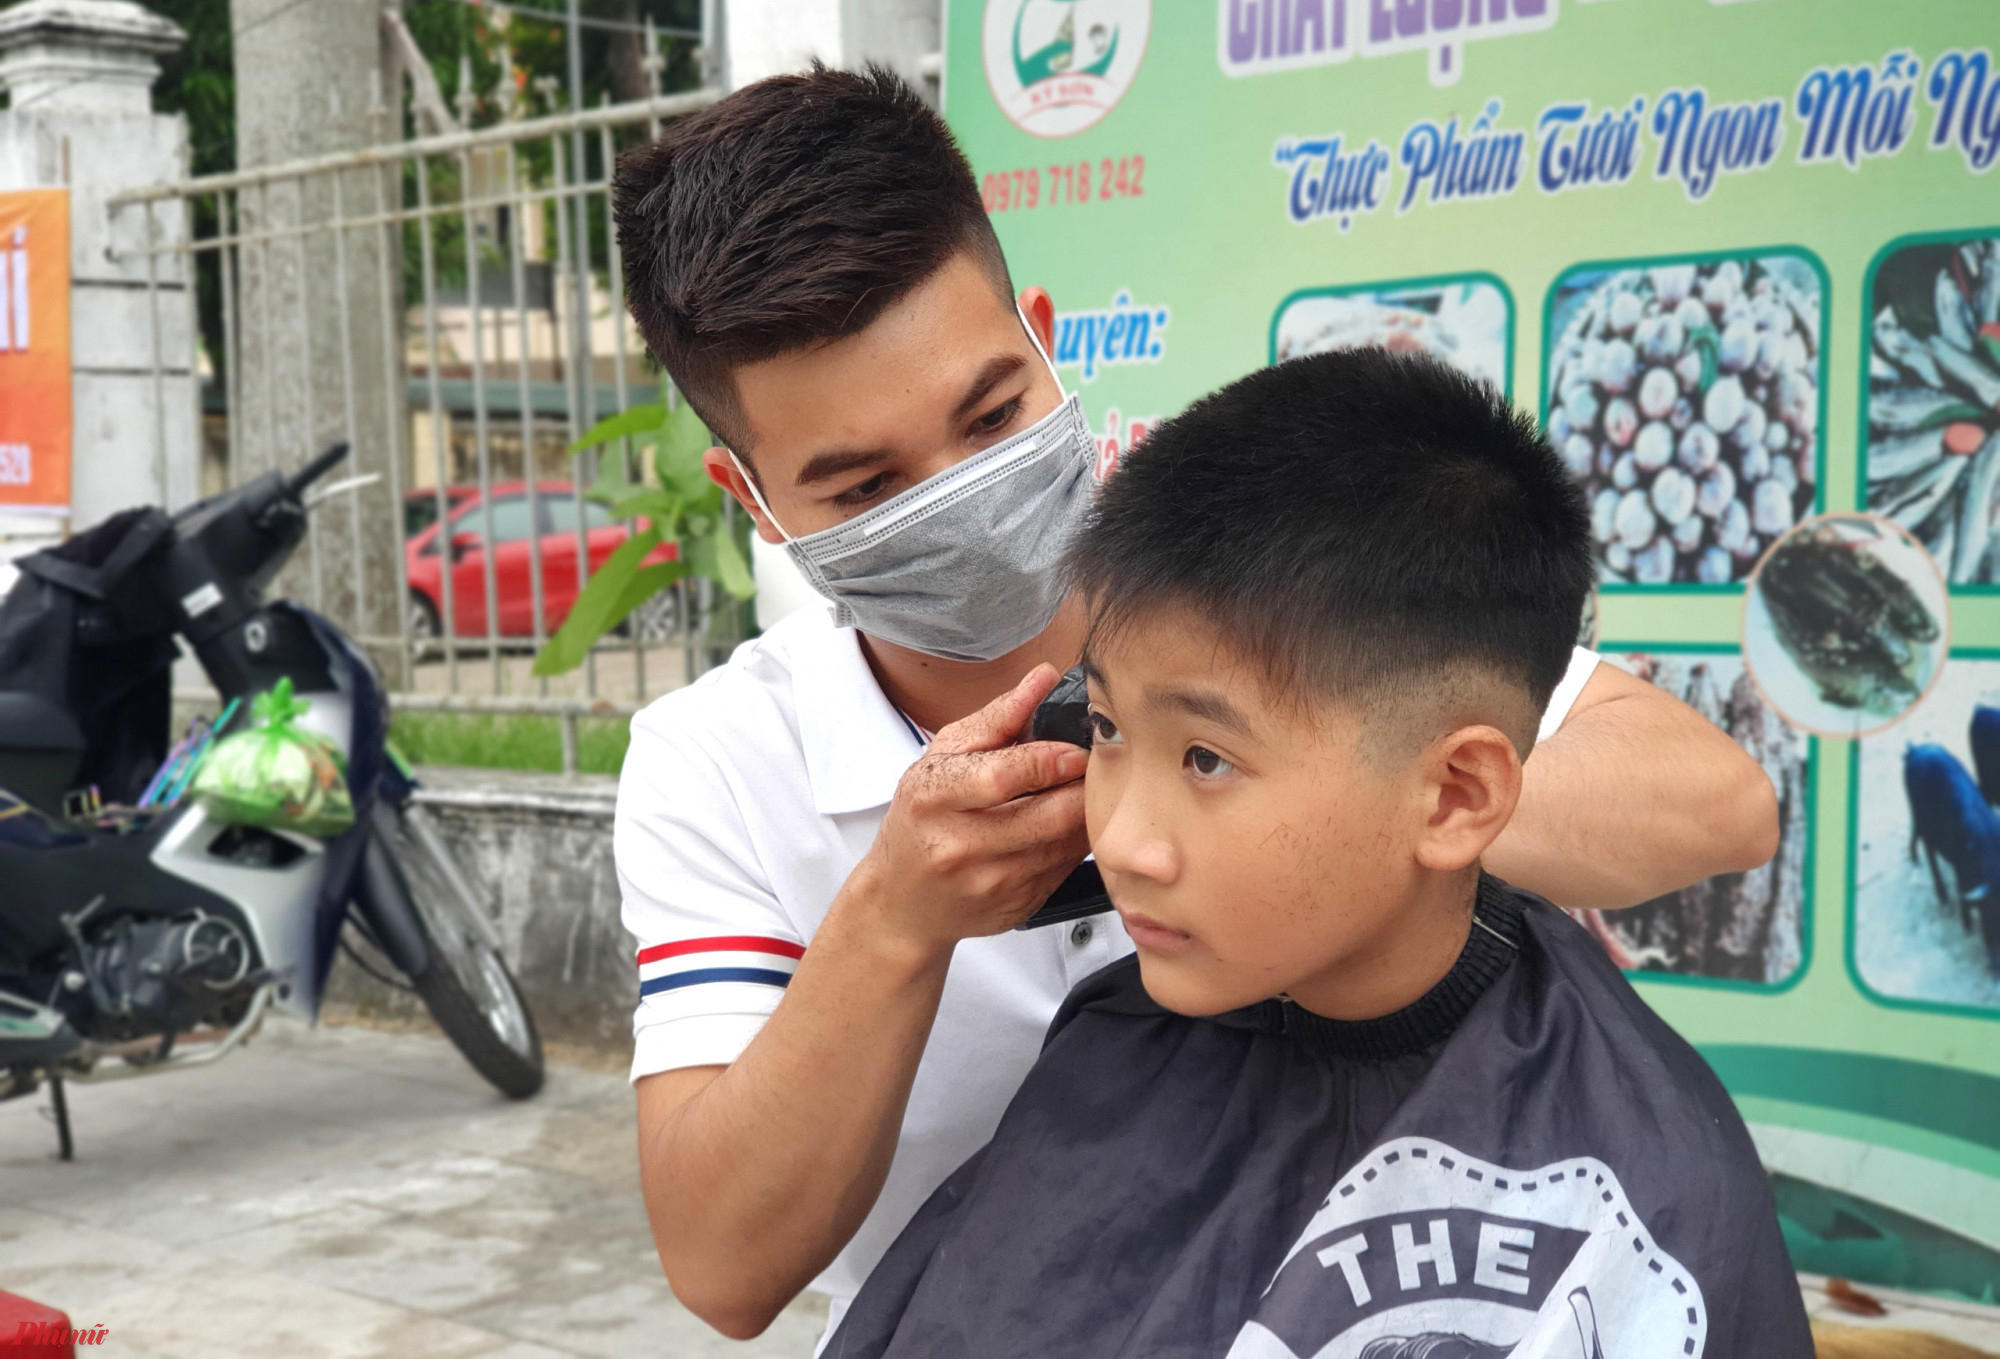 Anh Phạm Xuân Hưng (23 tuổi) nói rằng, những đợt cắt tóc như thế này, ngoài việc giúp đỡ cho những người có hoàn cảnh khó khăn thì đây còn là cơ hội để các thành viên trong nhóm được nâng cao và rèn luyện tay nghề. 